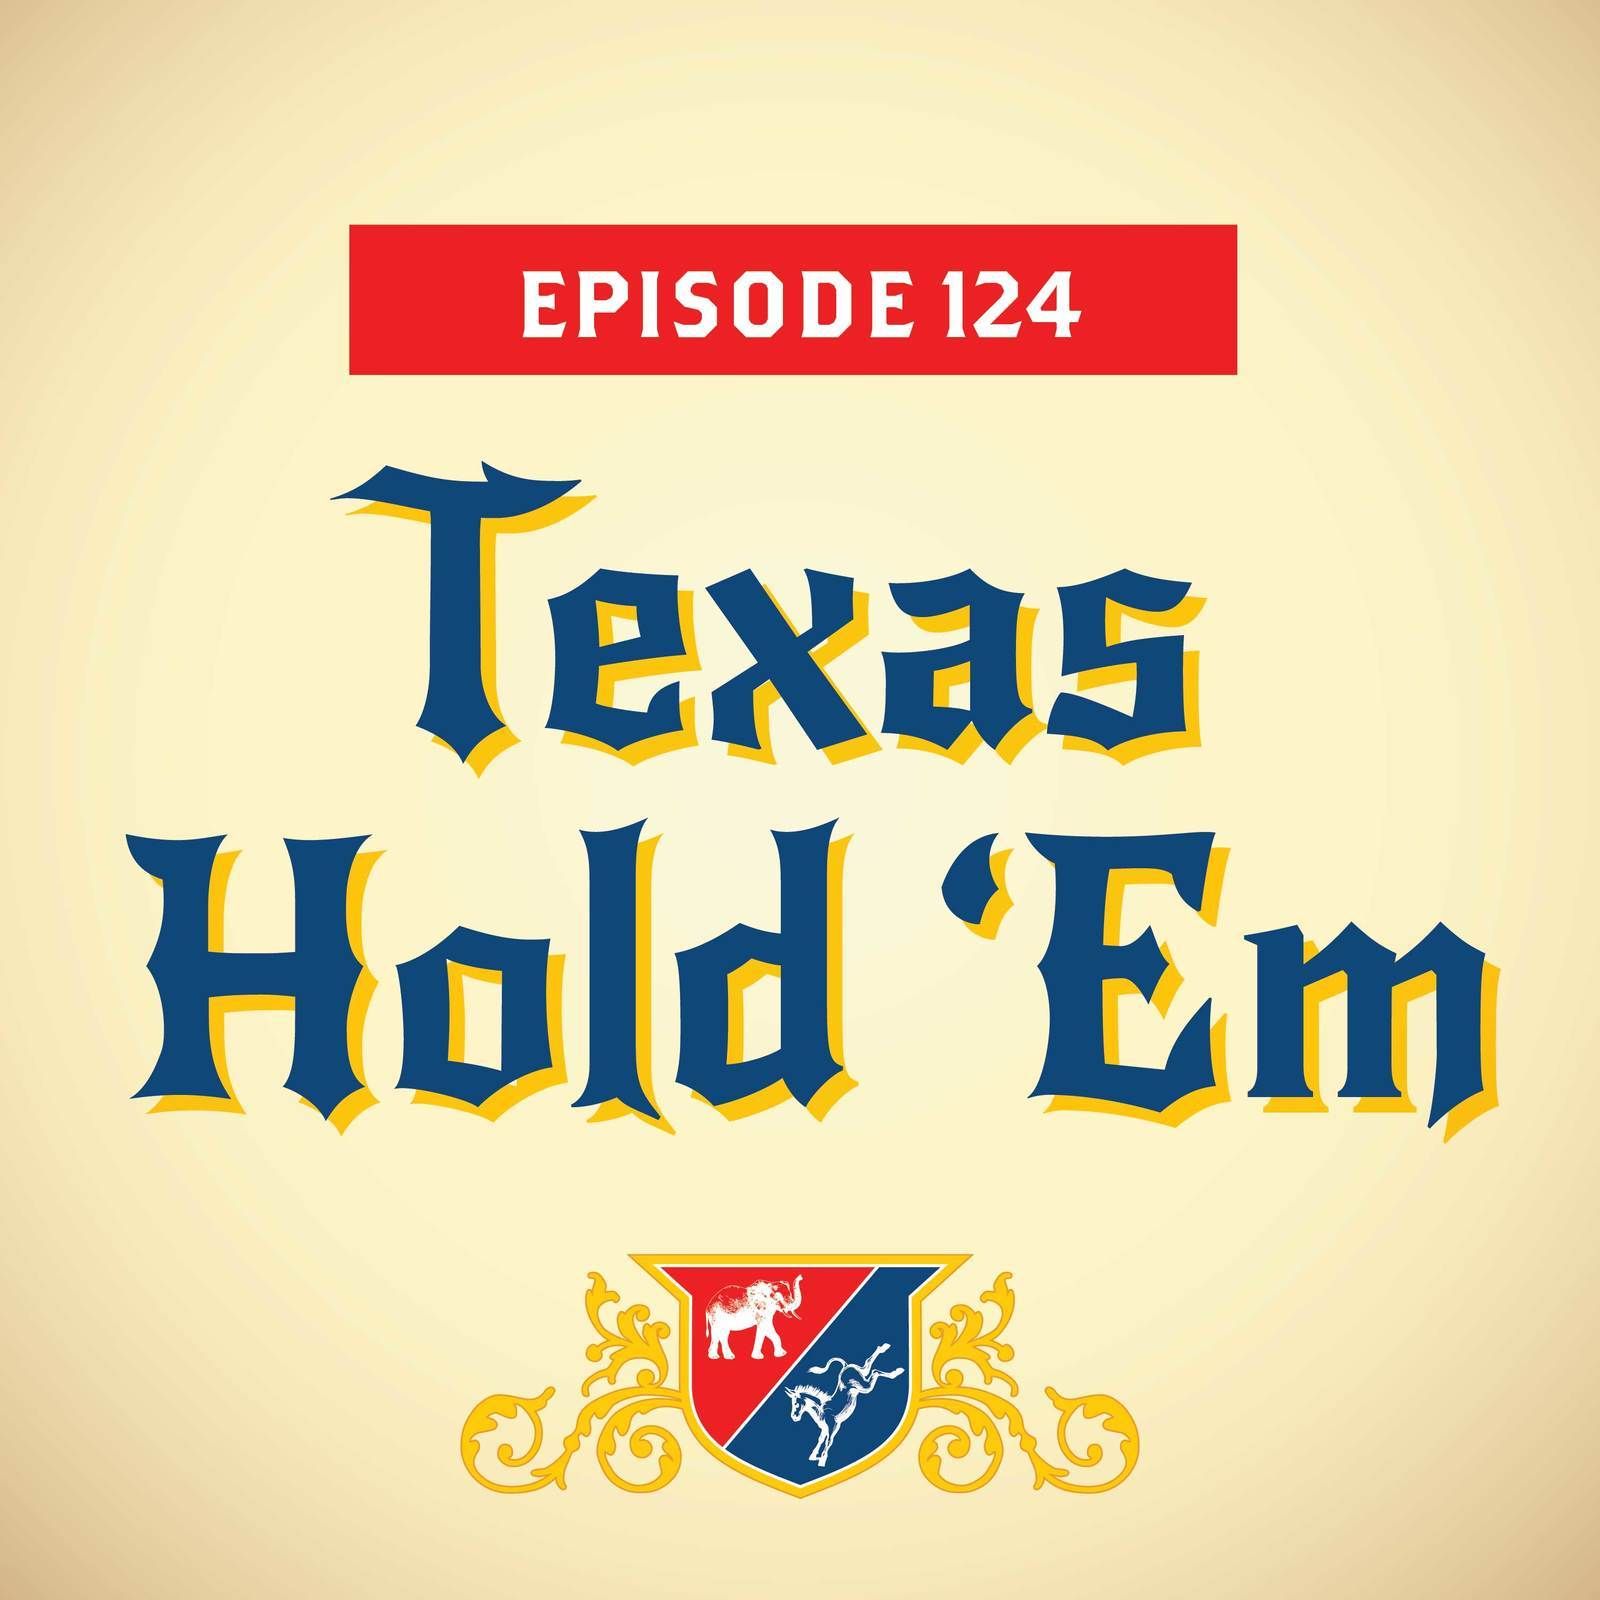 Texas Hold ‘Em (with Al Franken)